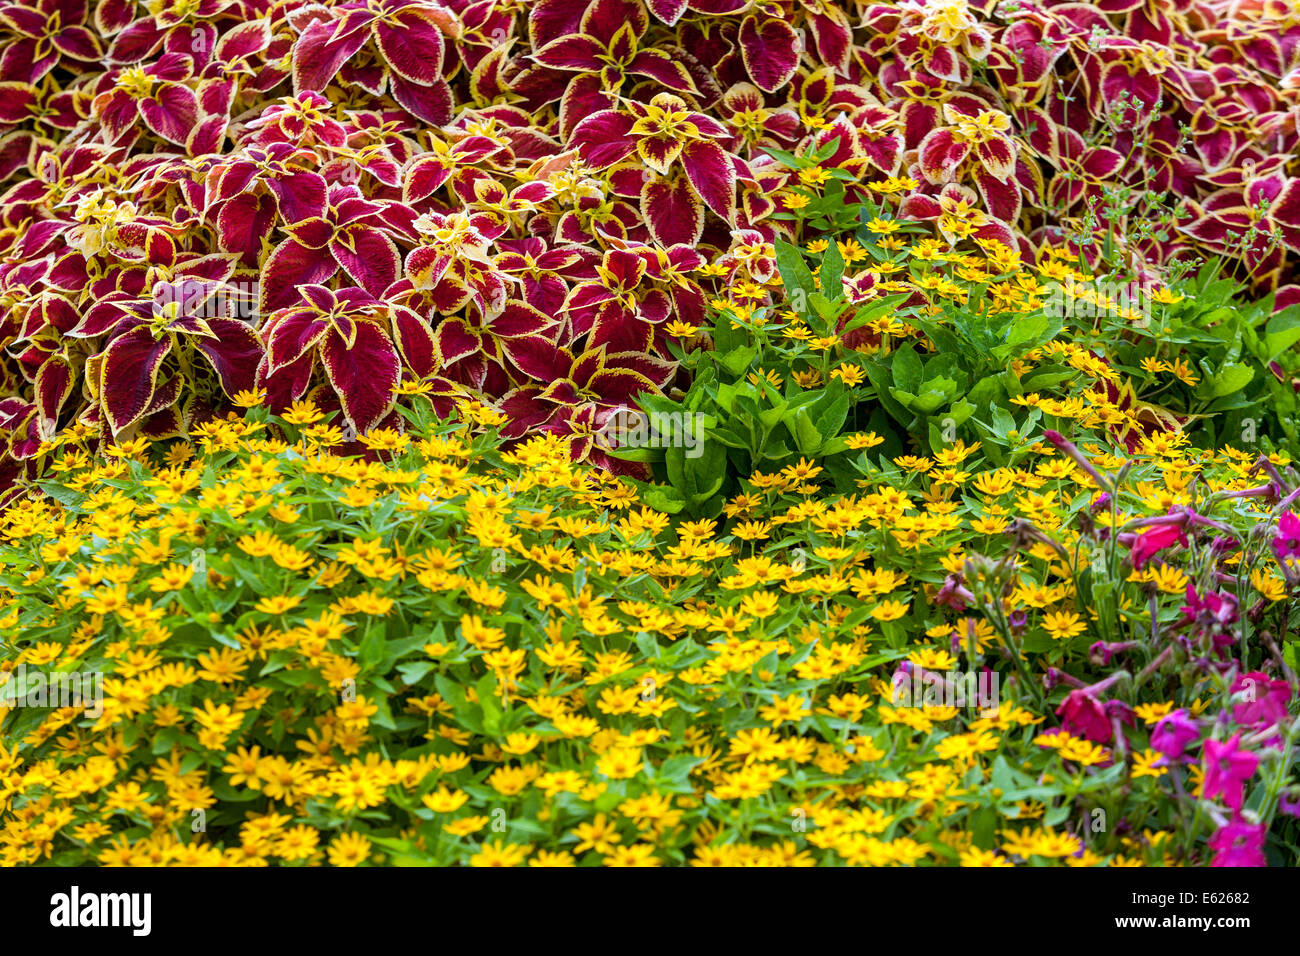 Mélange coloré lit de fleurs annuelles, Coleus 'scarlet Wizard', Melampodium paludosum beurre Daisy, beau jardin fleurs plantes de literie Banque D'Images